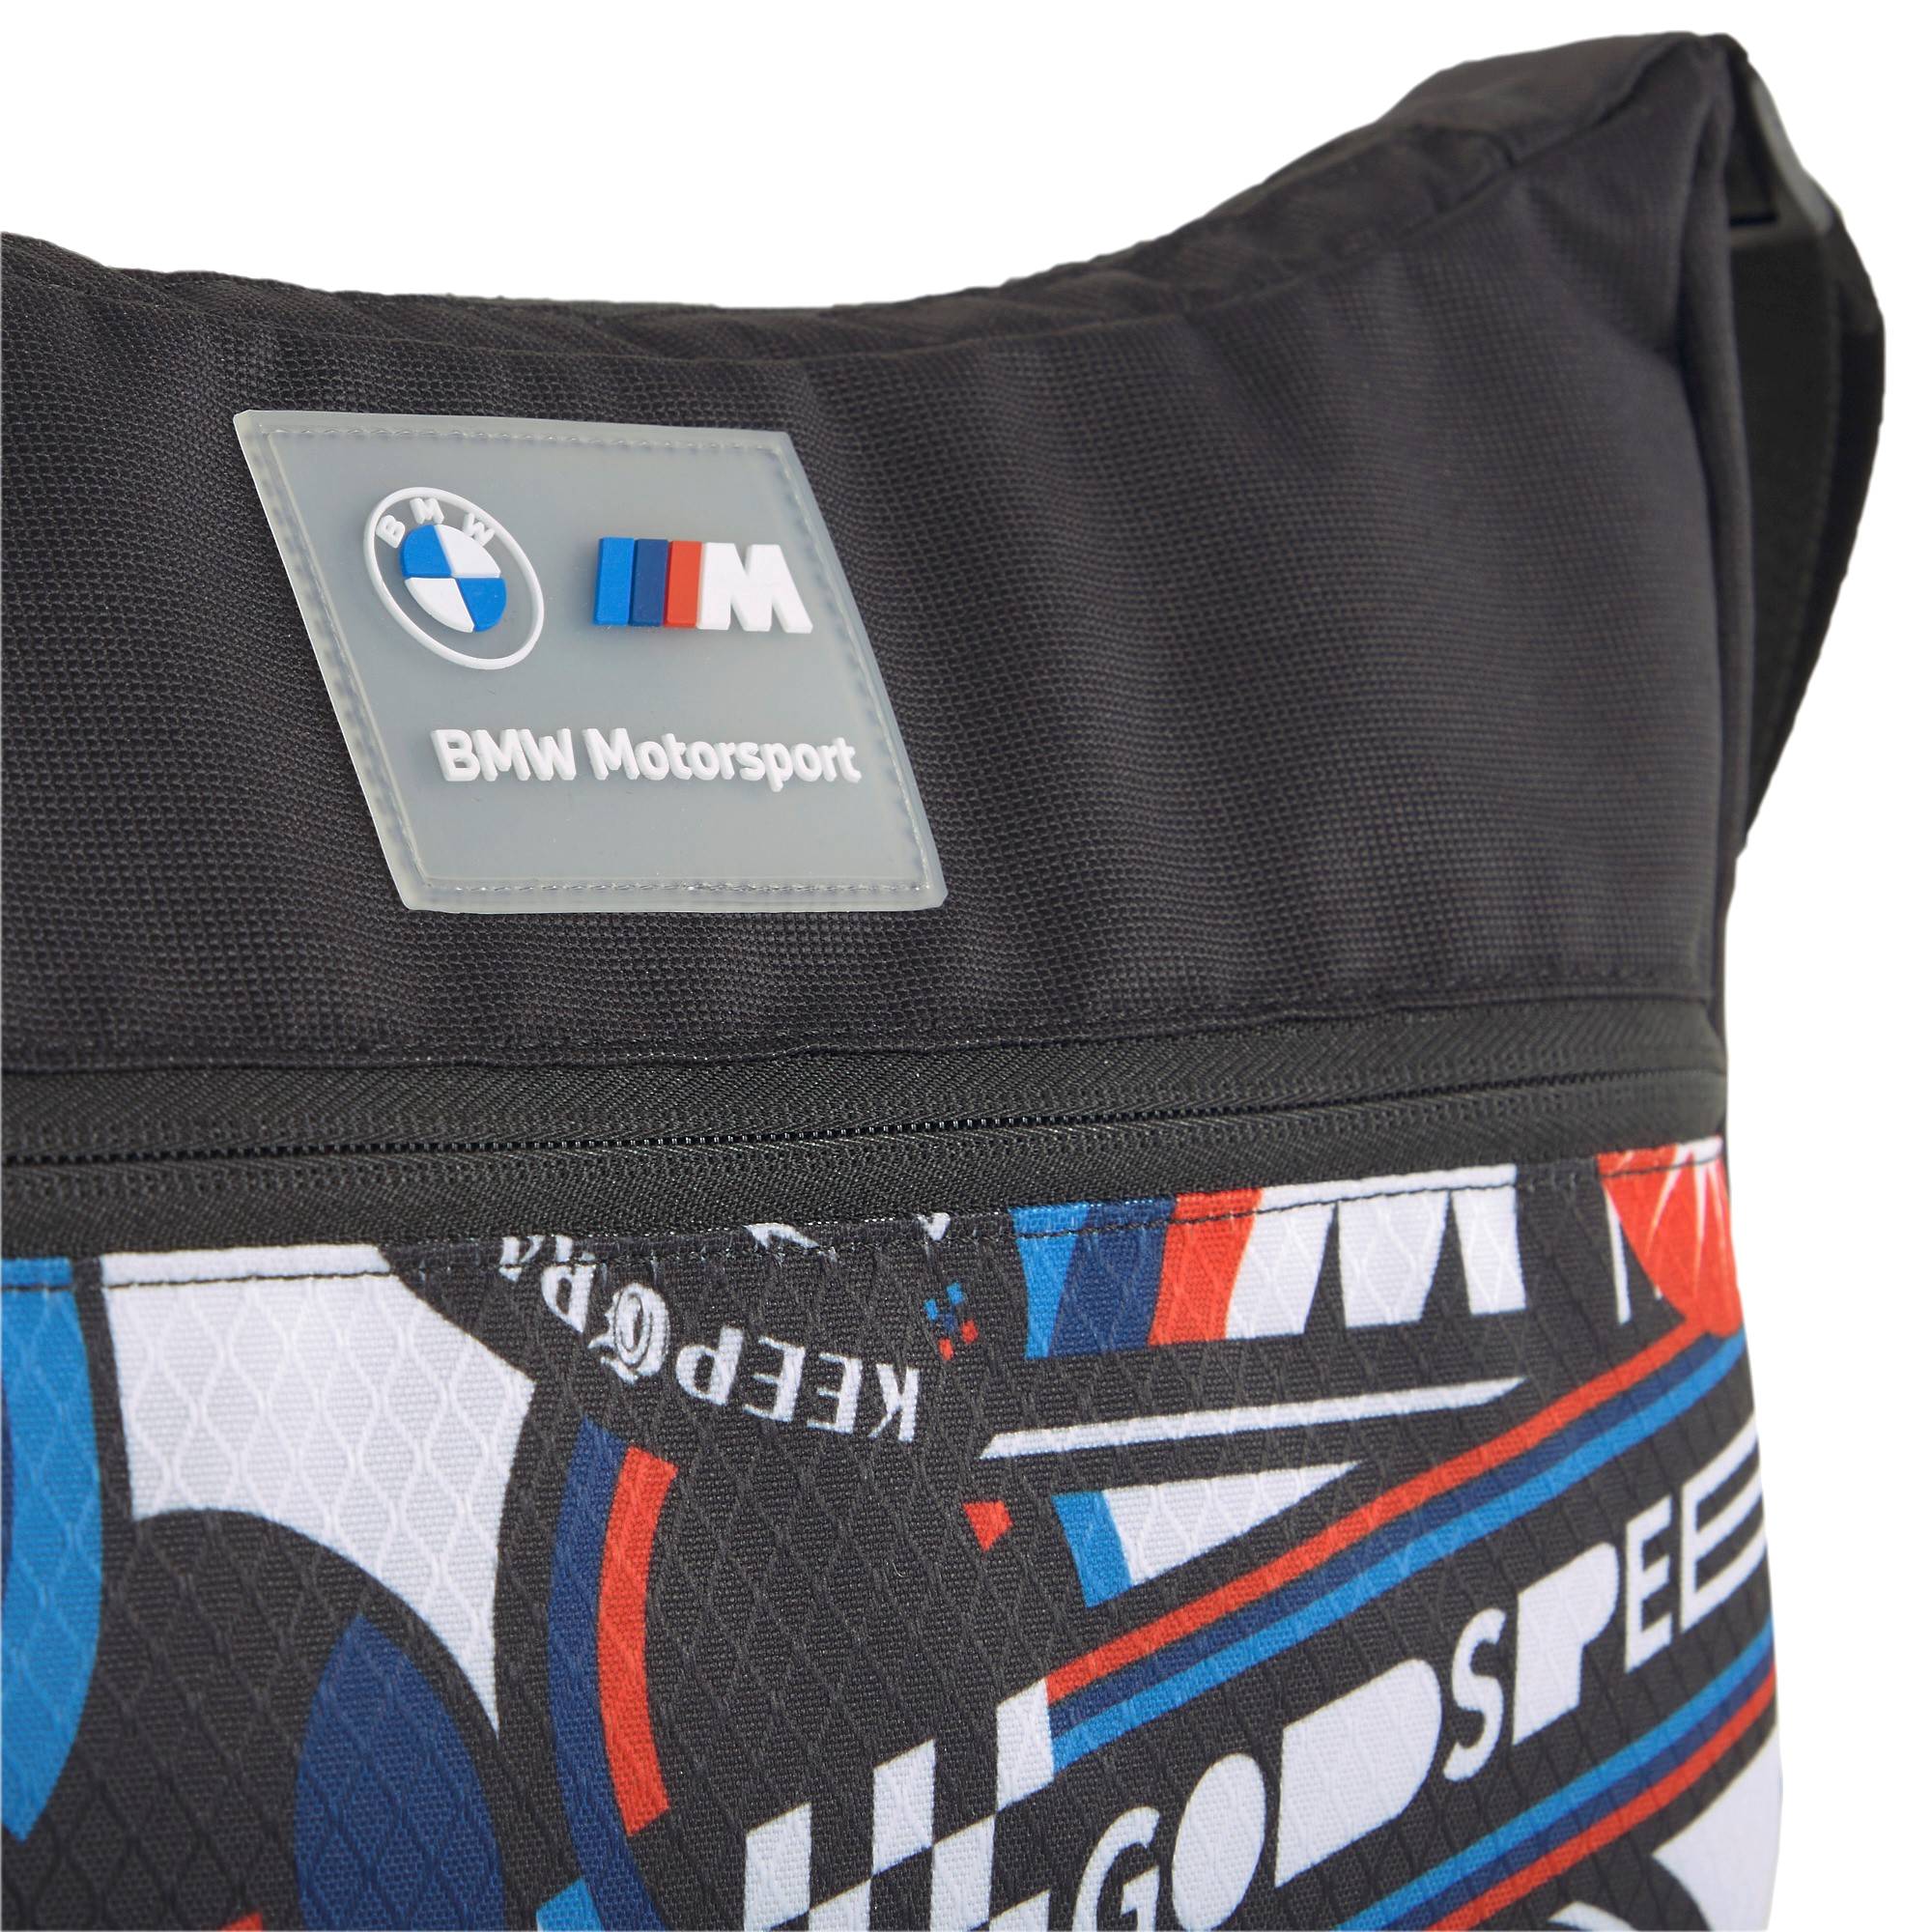 BMW Motorsport Puma Messenger Tasche "MMS" - schwarz